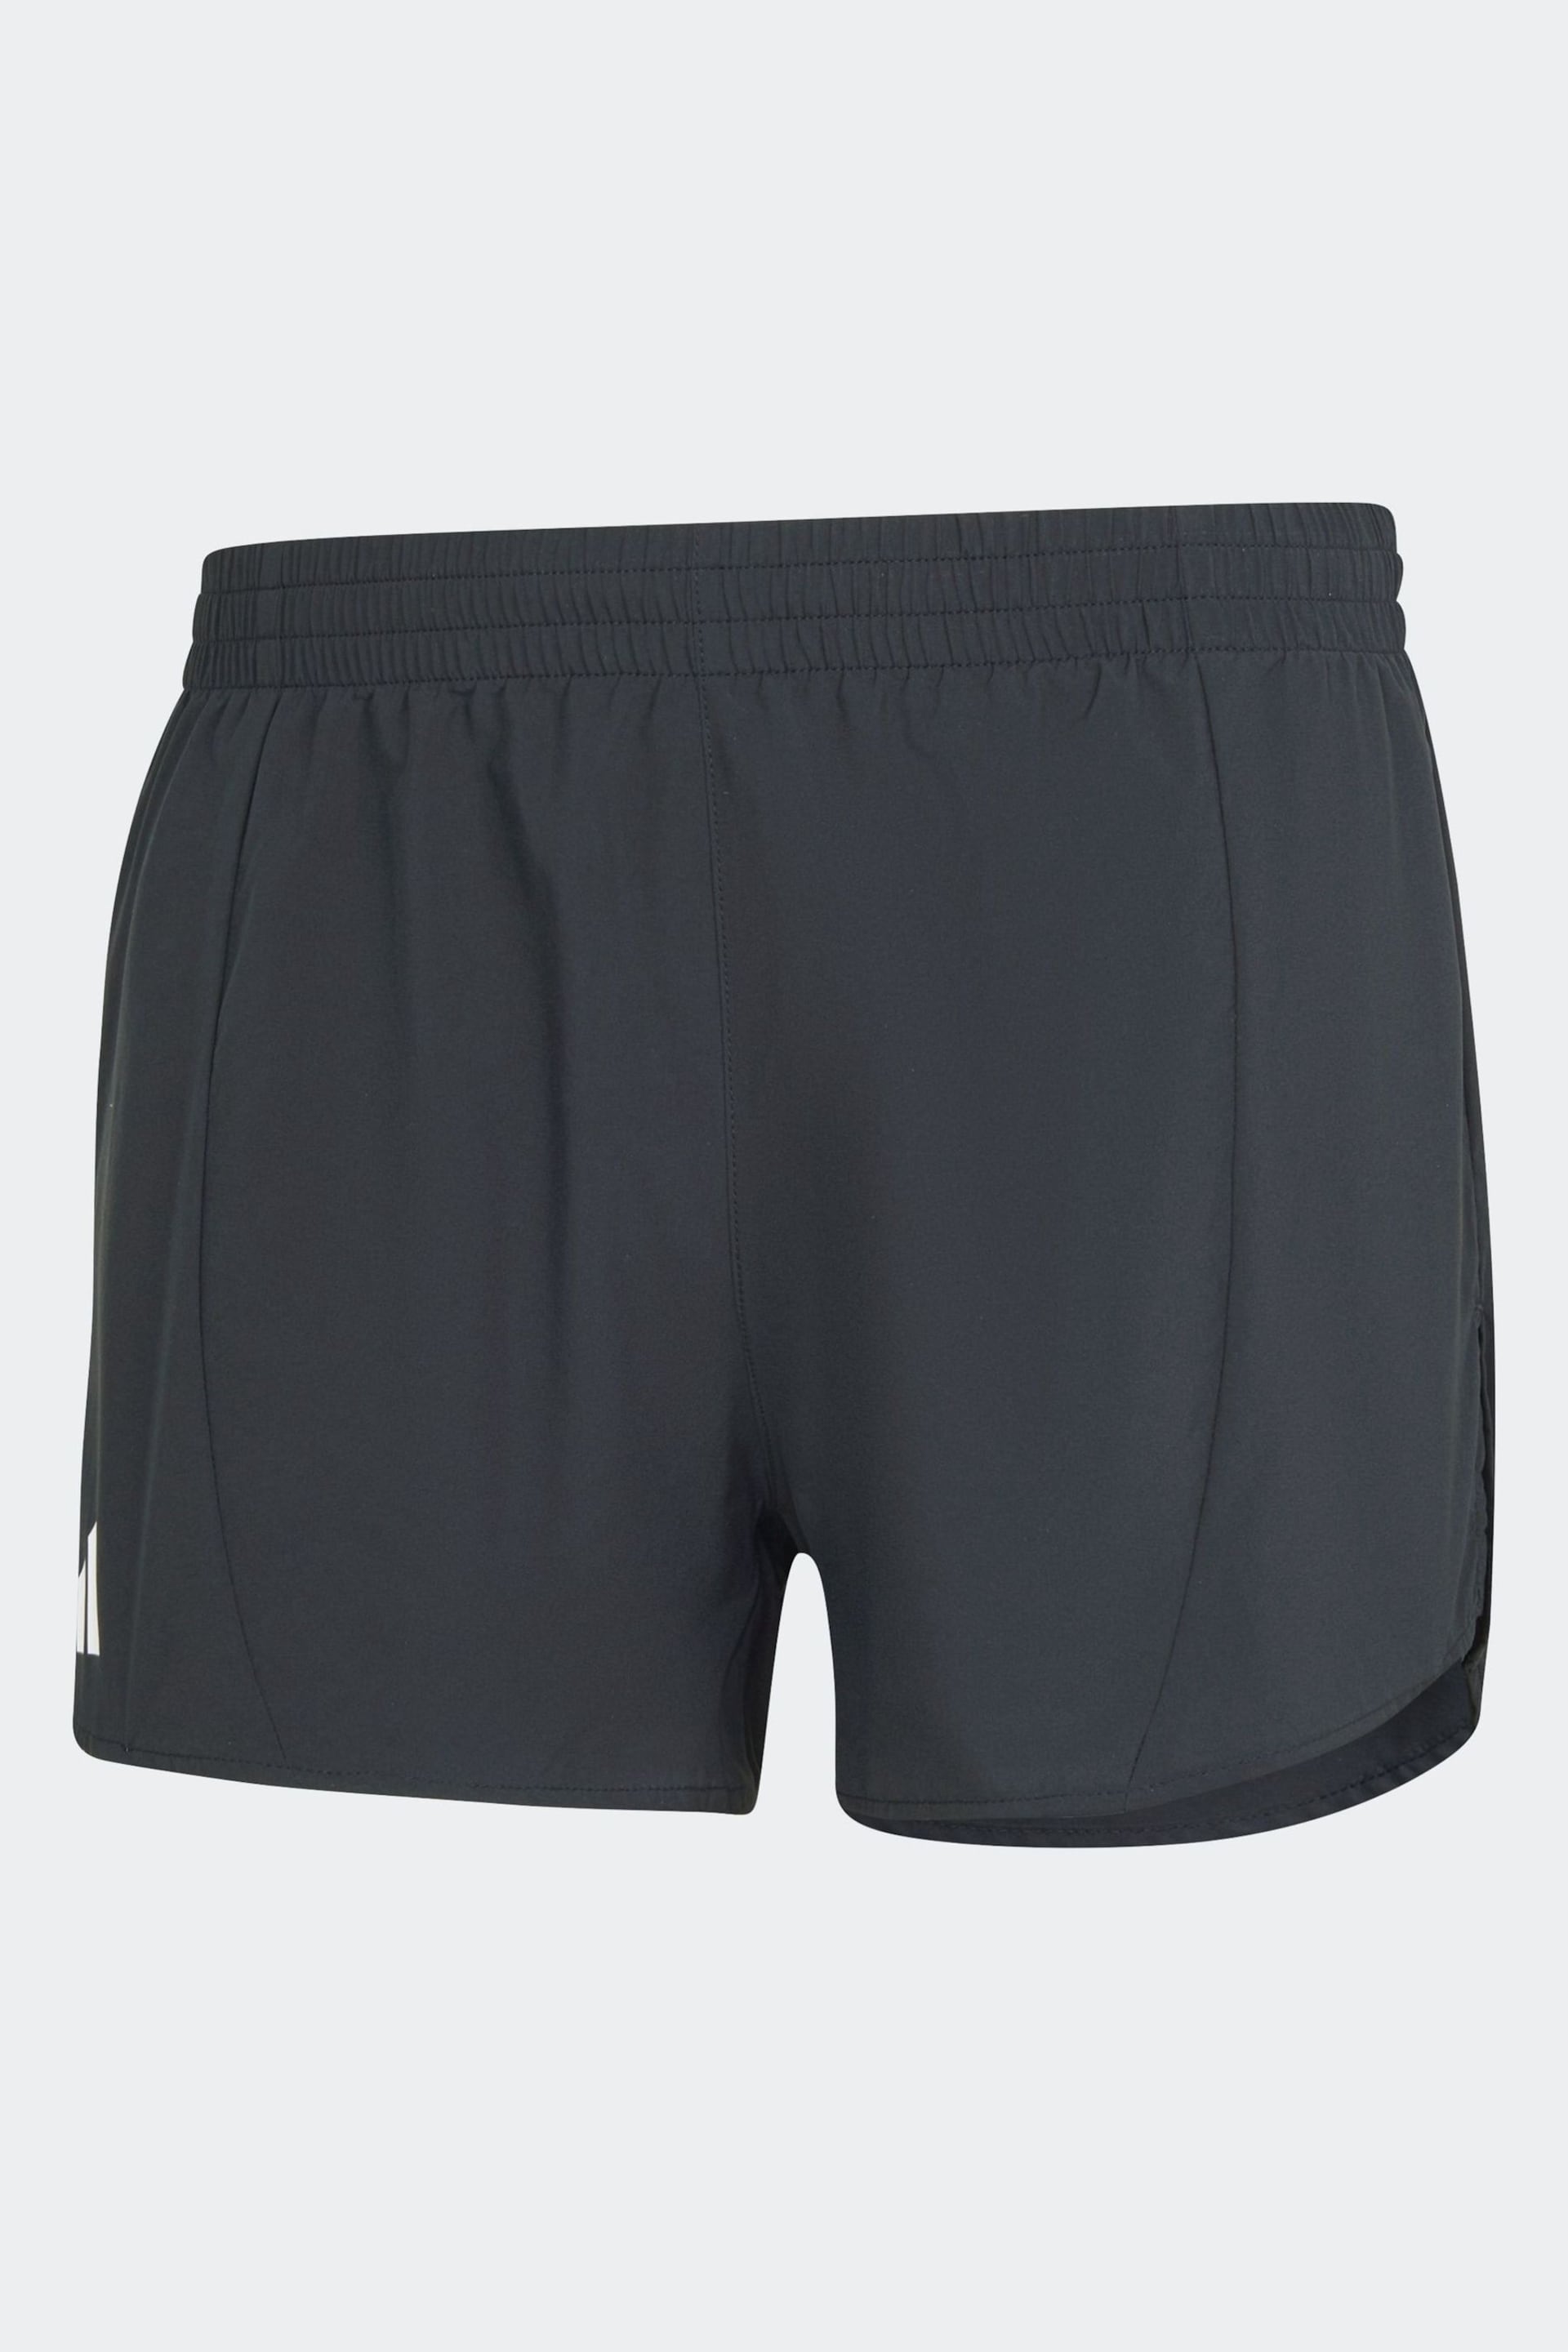 adidas Black Adizero Essential Running Shorts - Image 6 of 6